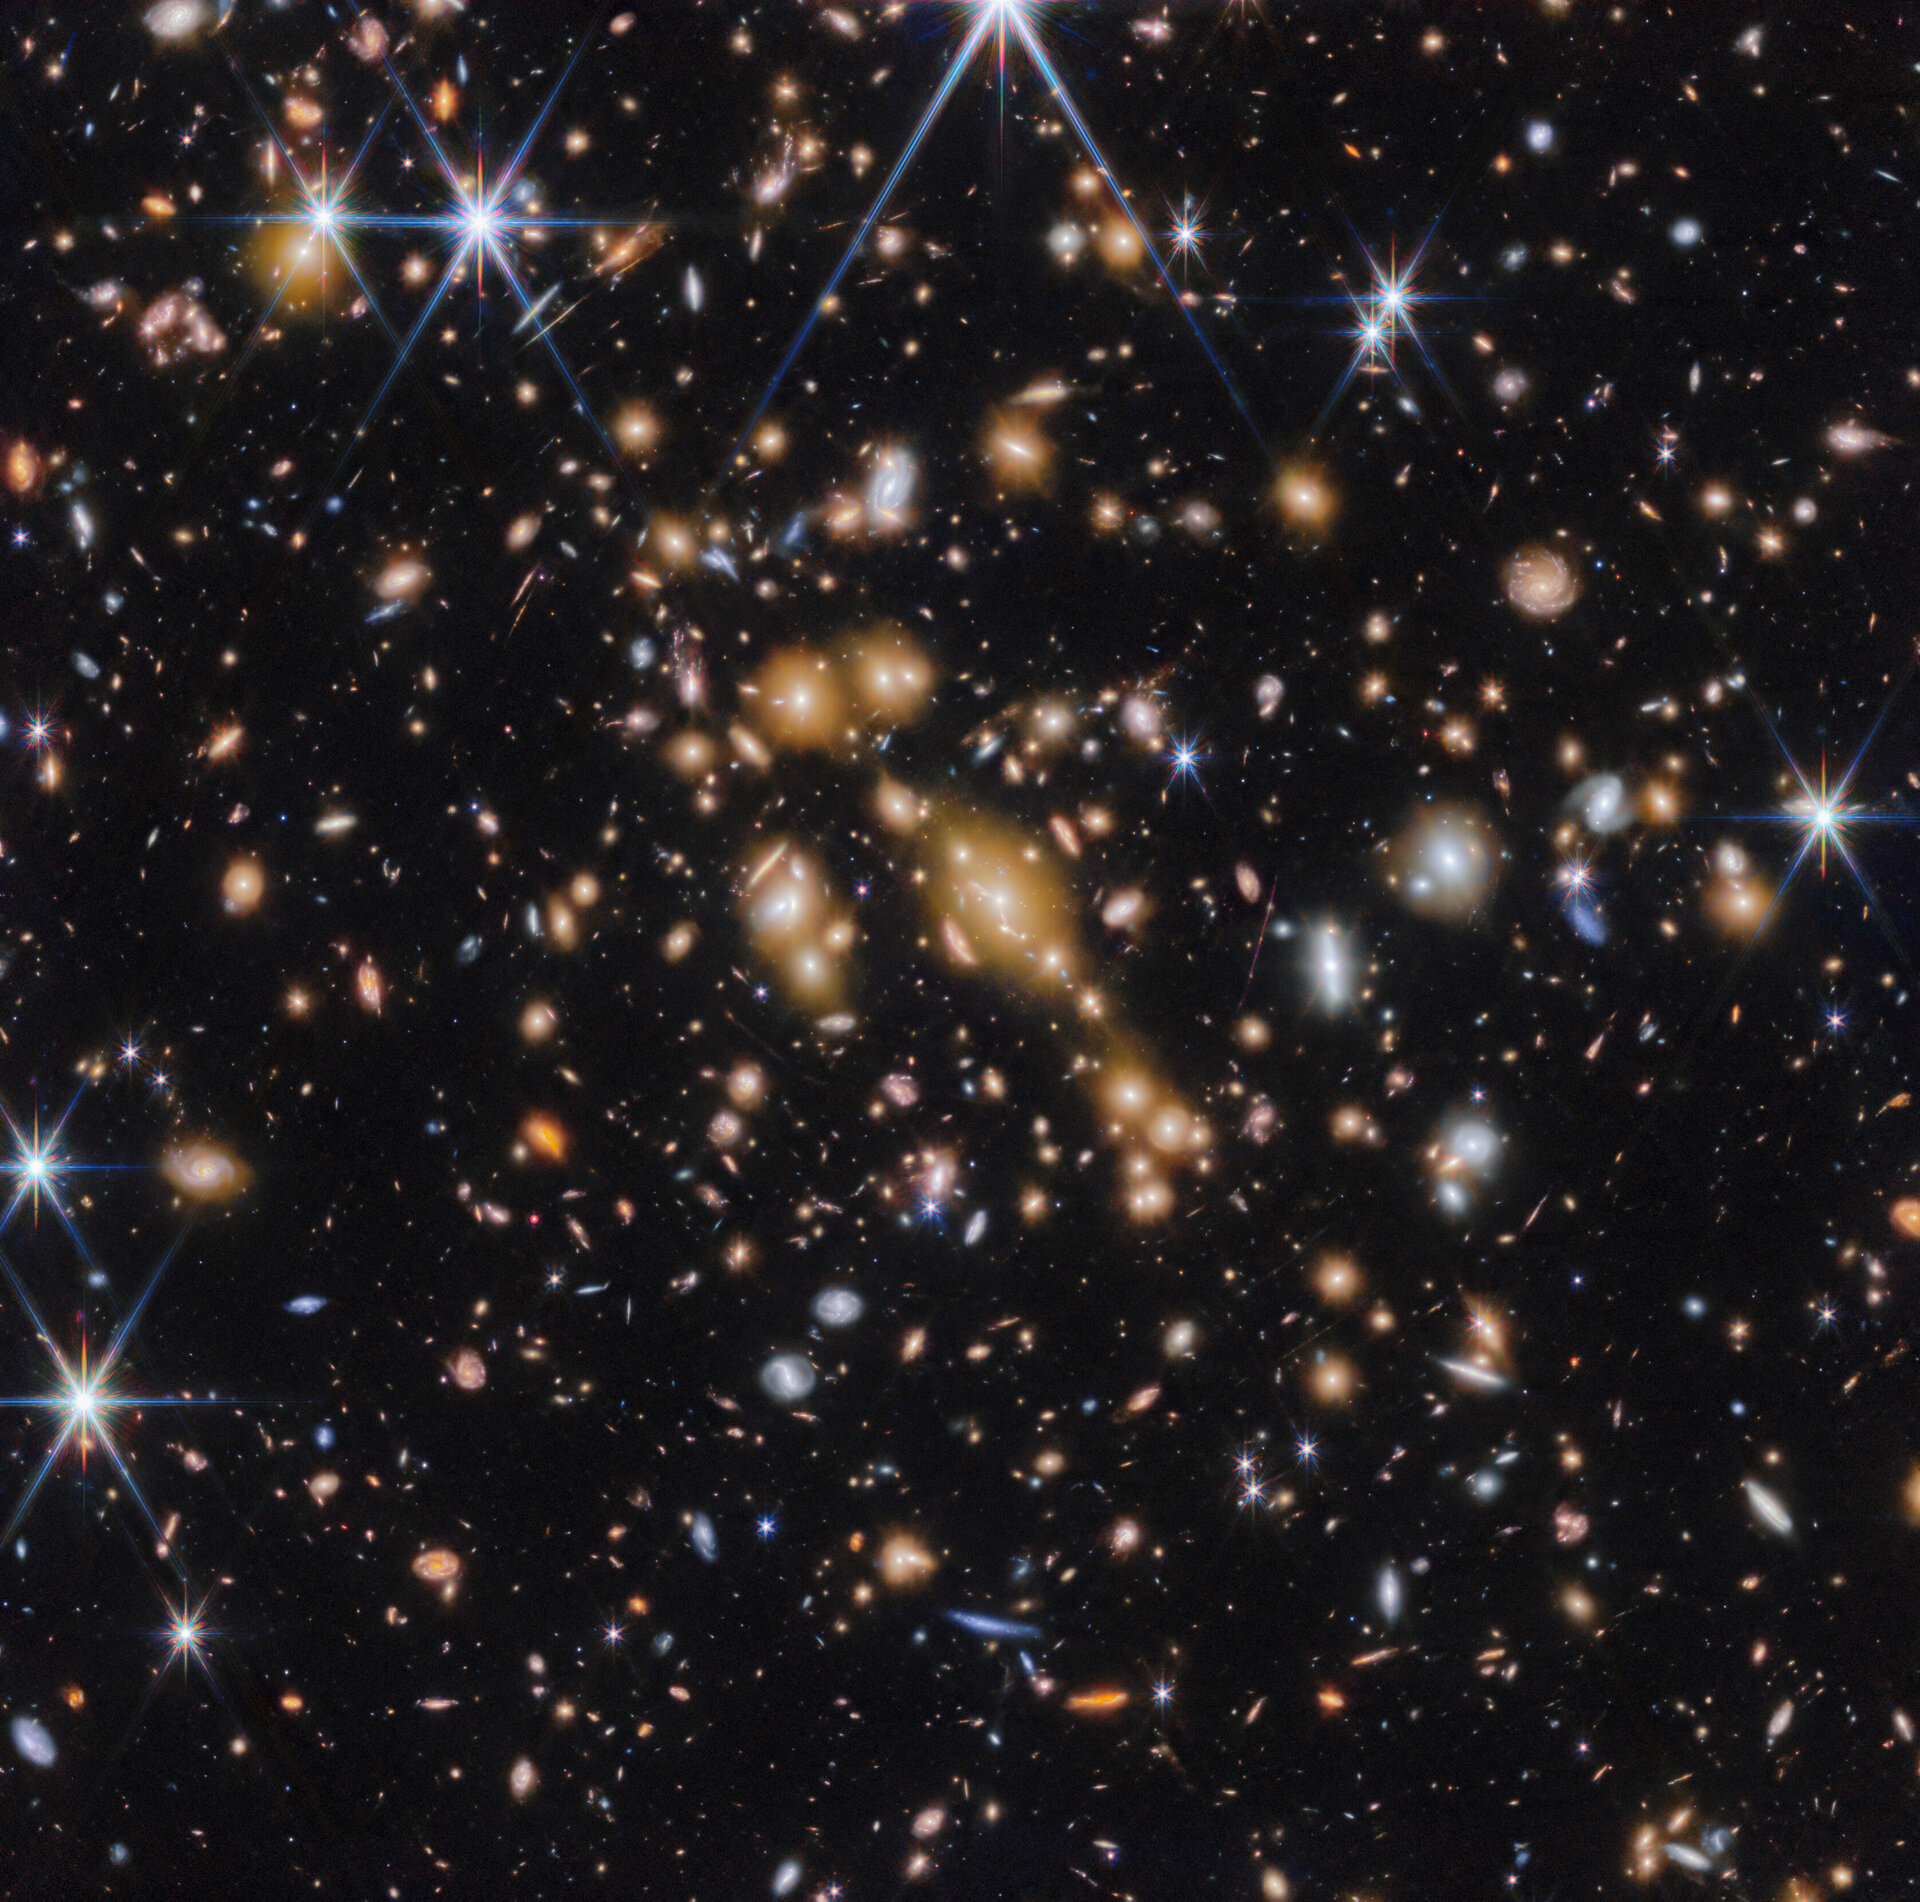 El telescopio espacial James Webb detecta 'gemas cósmicas' en un universo extremadamente primitivo (vídeo)